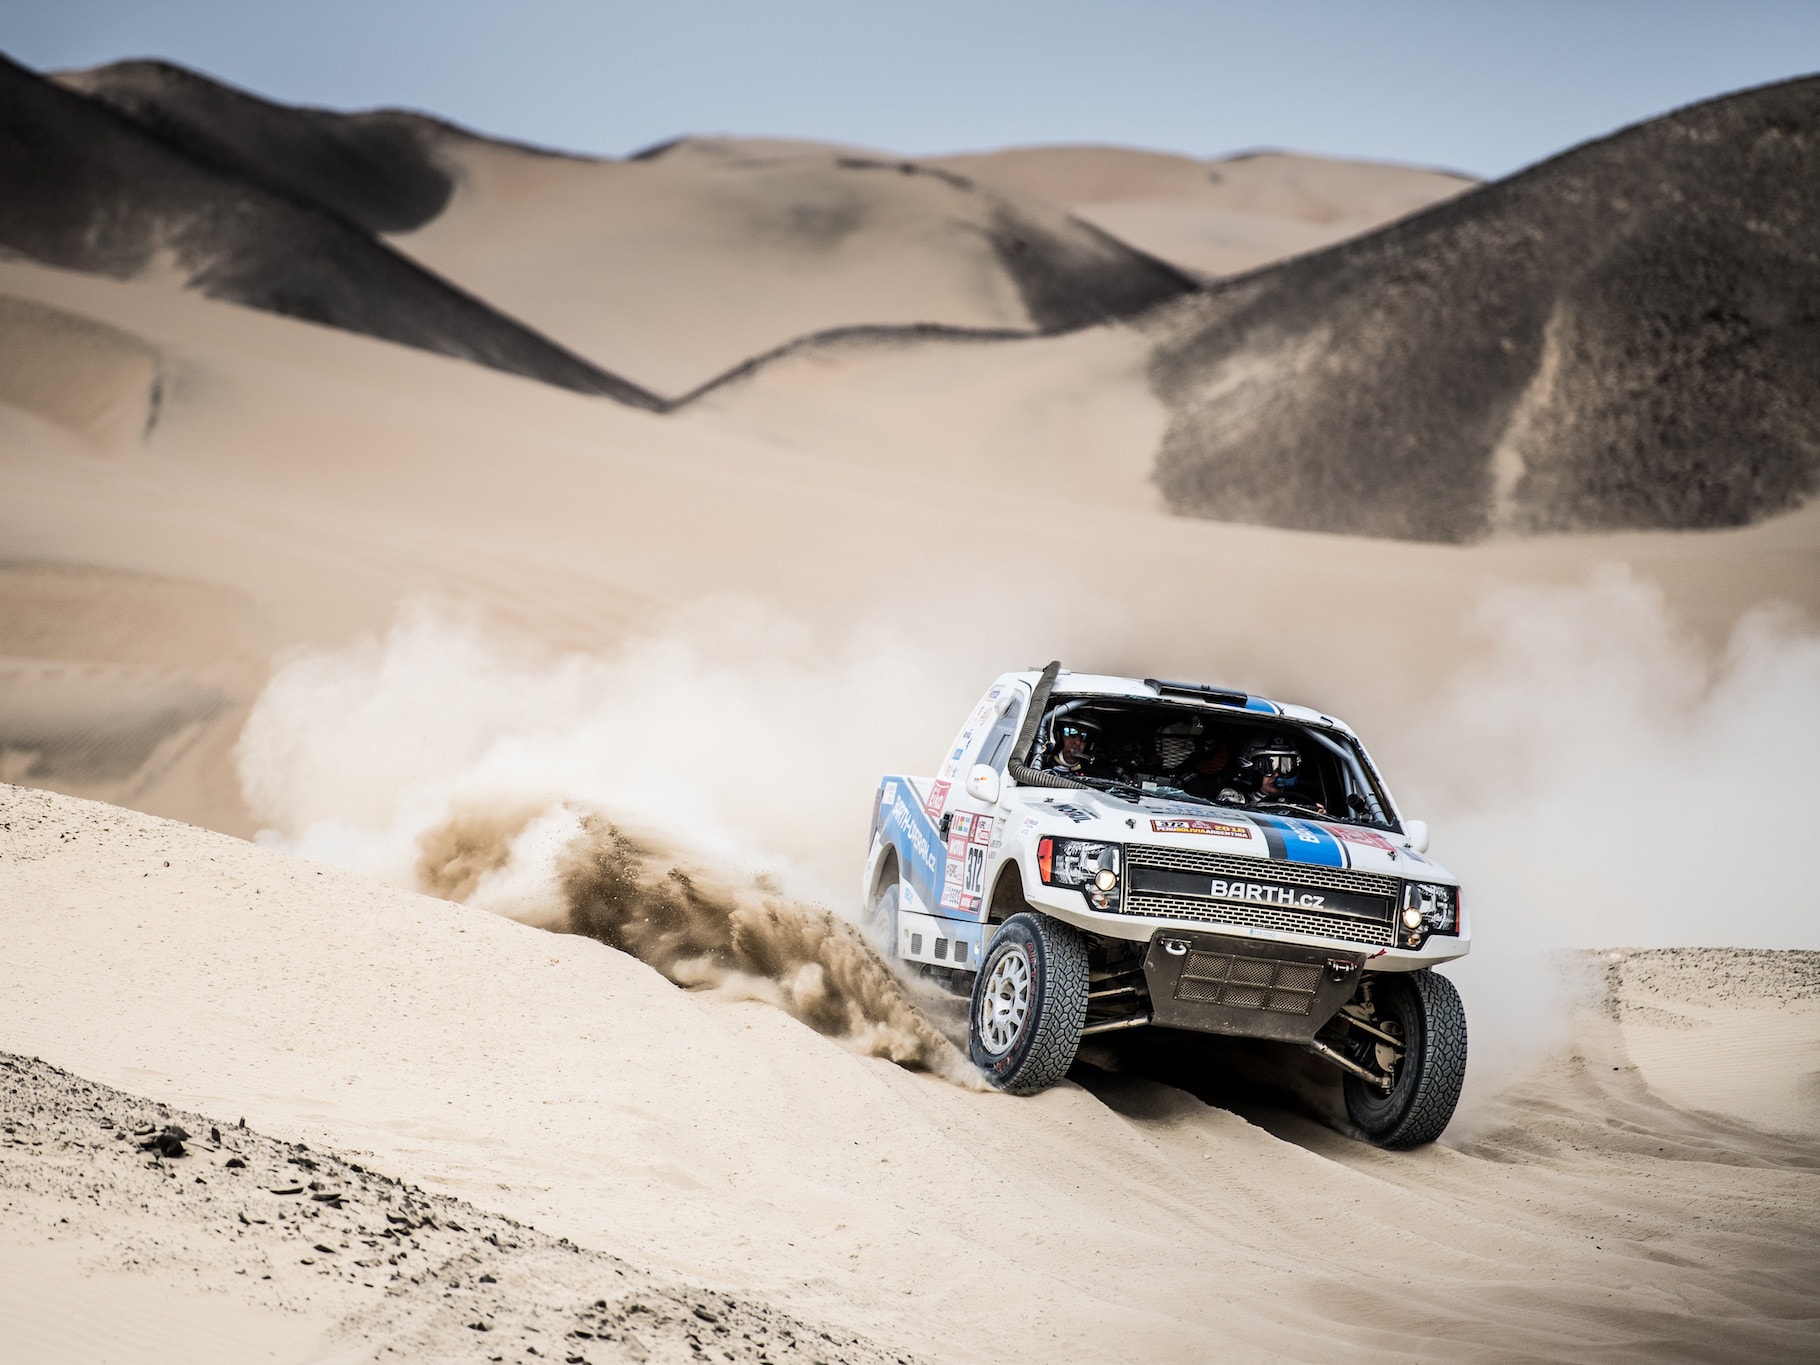 Rallye Dakar 2018 už je v plném proudu!